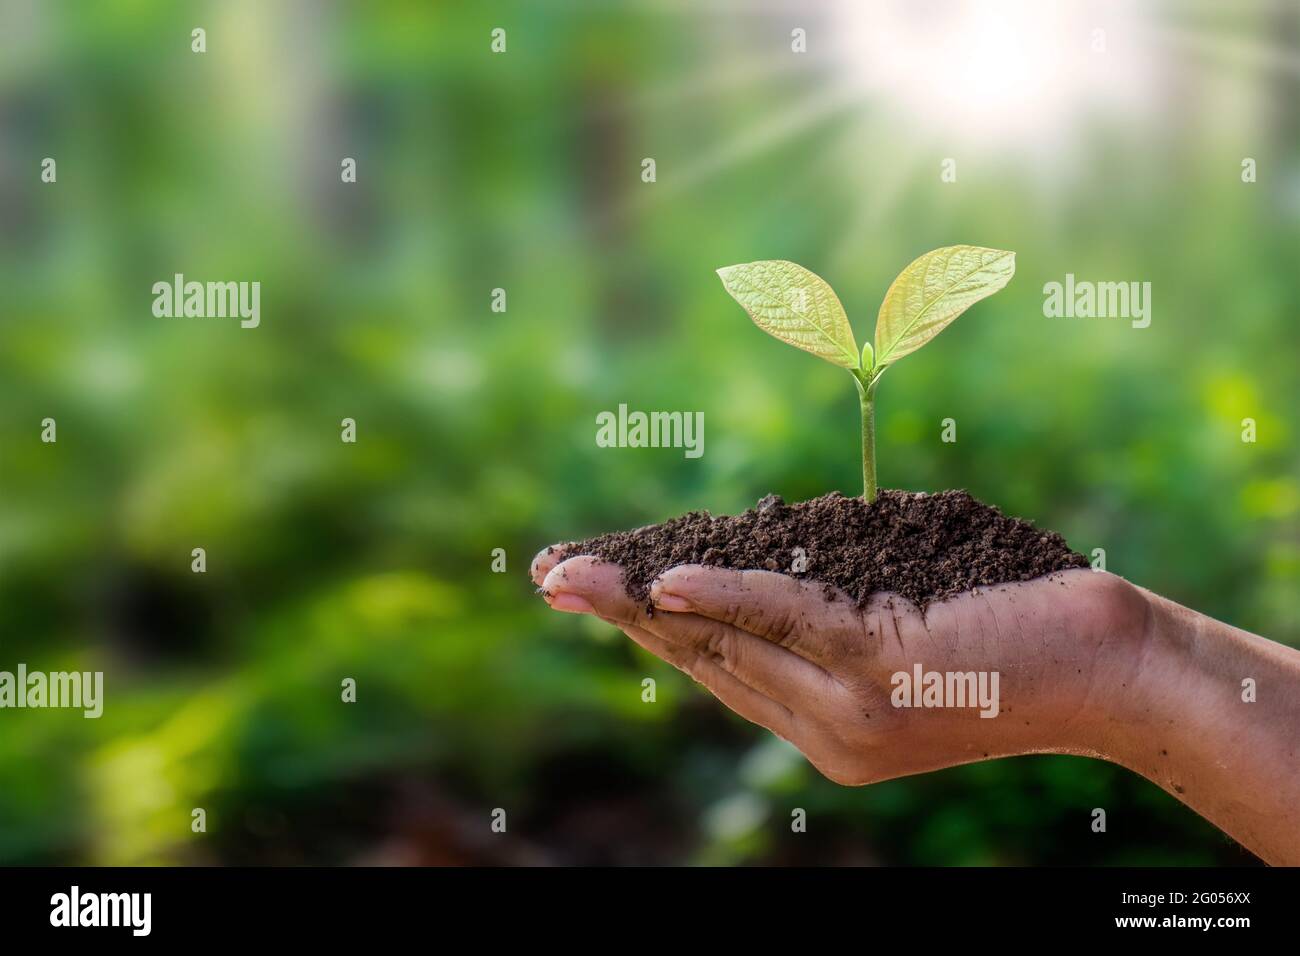 Gli alberi sono piantati a terra in mani umane con sfondi verdi naturali, il concetto di crescita delle piante e la protezione ambientale. Foto Stock